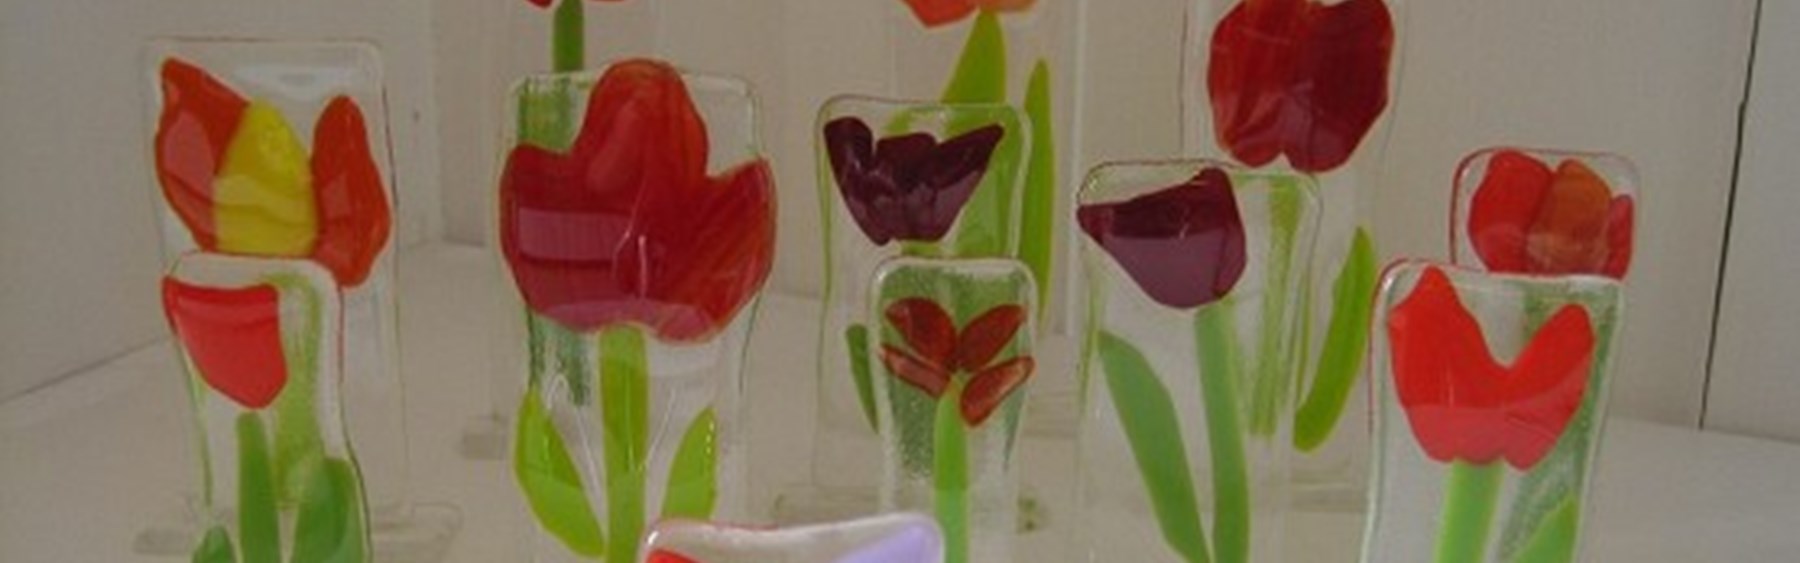 Fint kunst lavet af glas. Det forestiller blomster. De fleste er røde tulipaner.